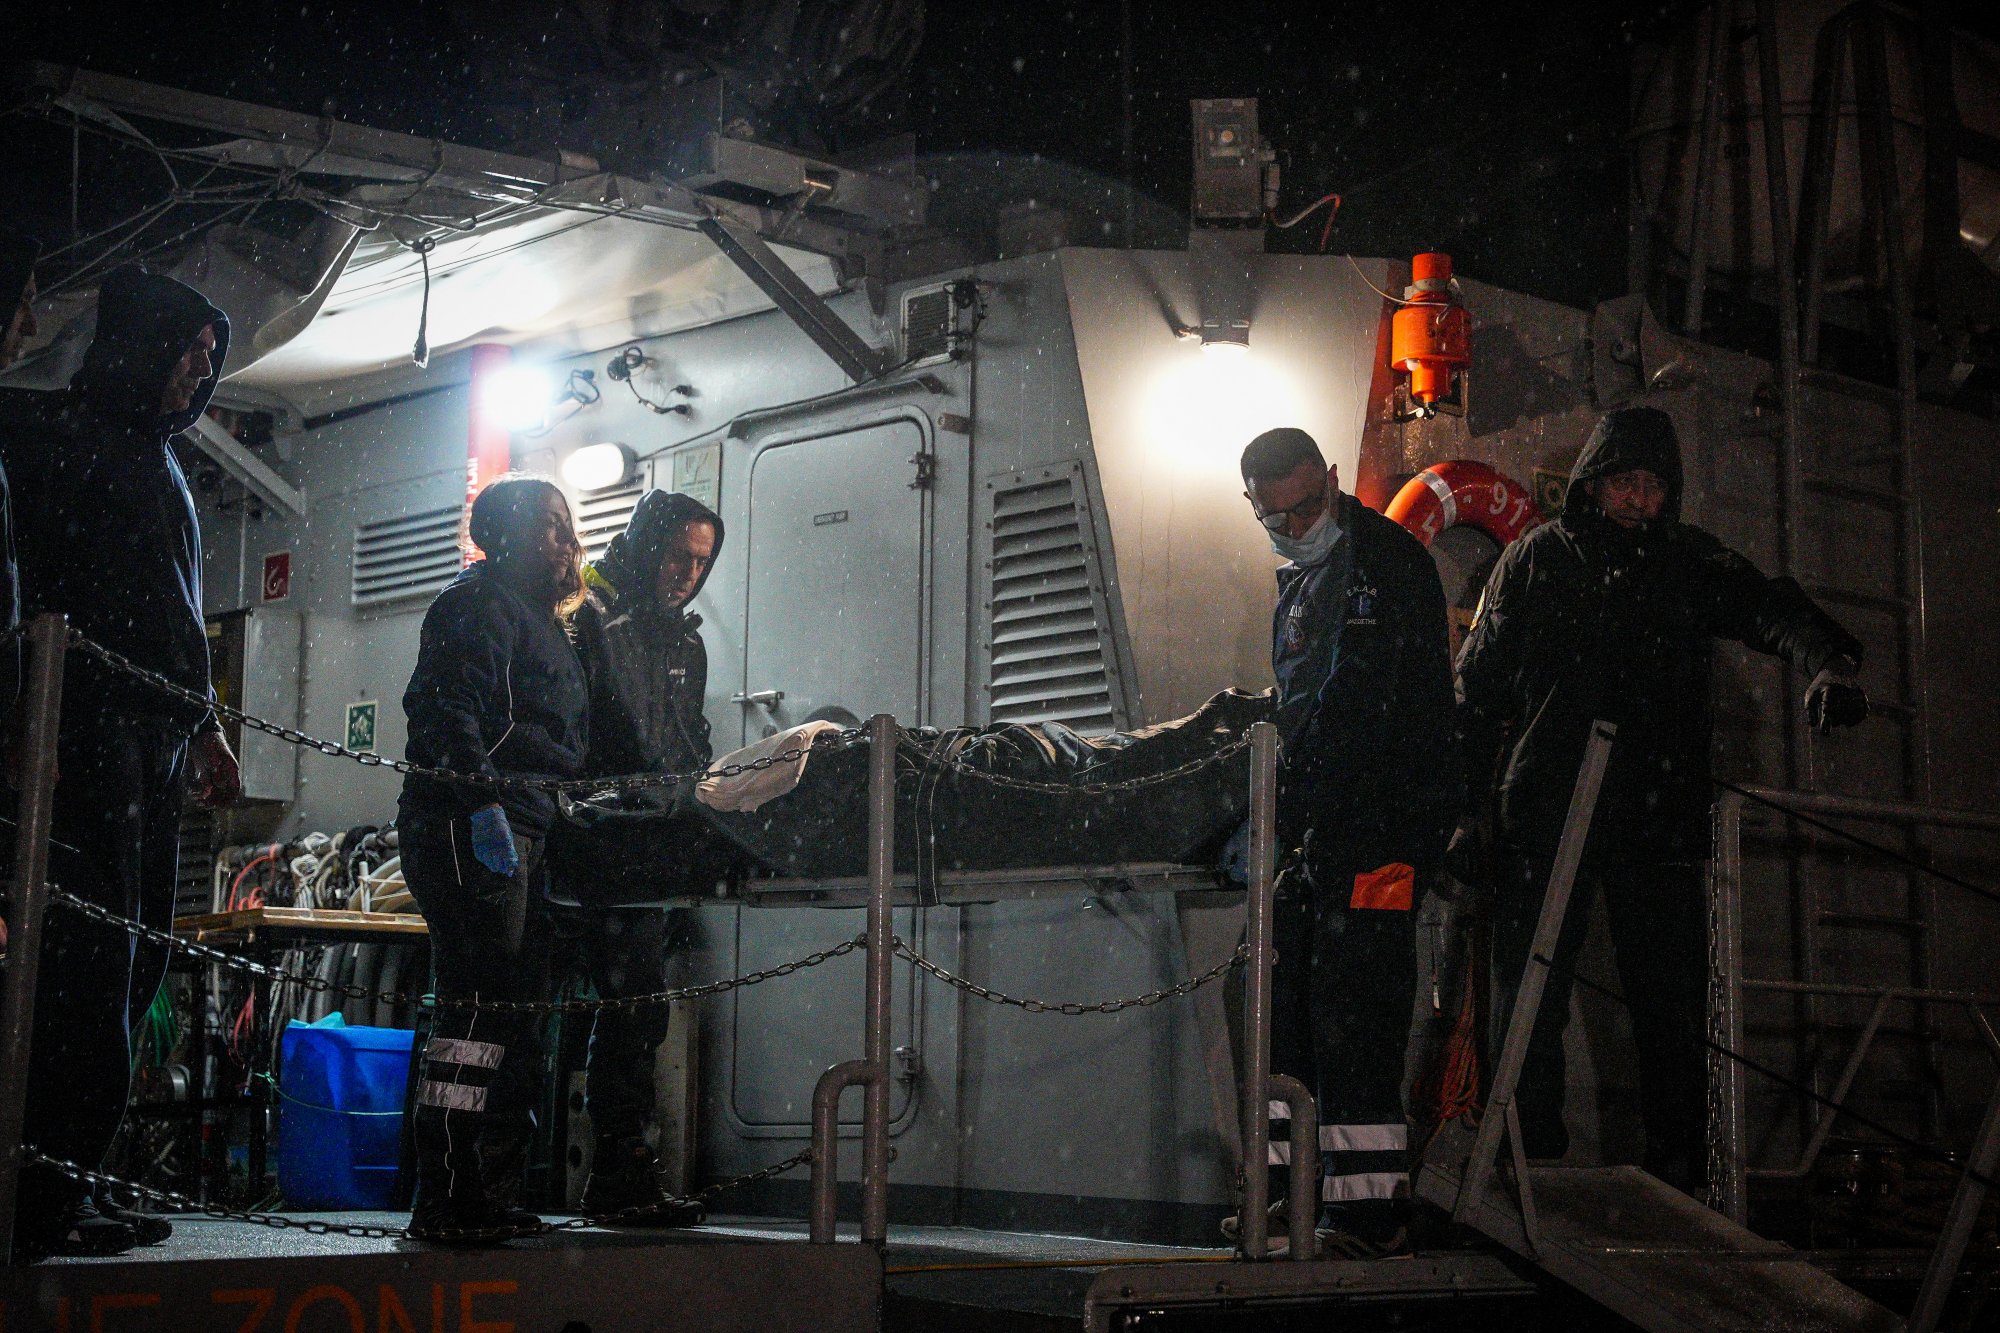 Λέσβος: Αναγνωρίστηκε η σορός που περισυνελέγη μετά το ναυάγιο